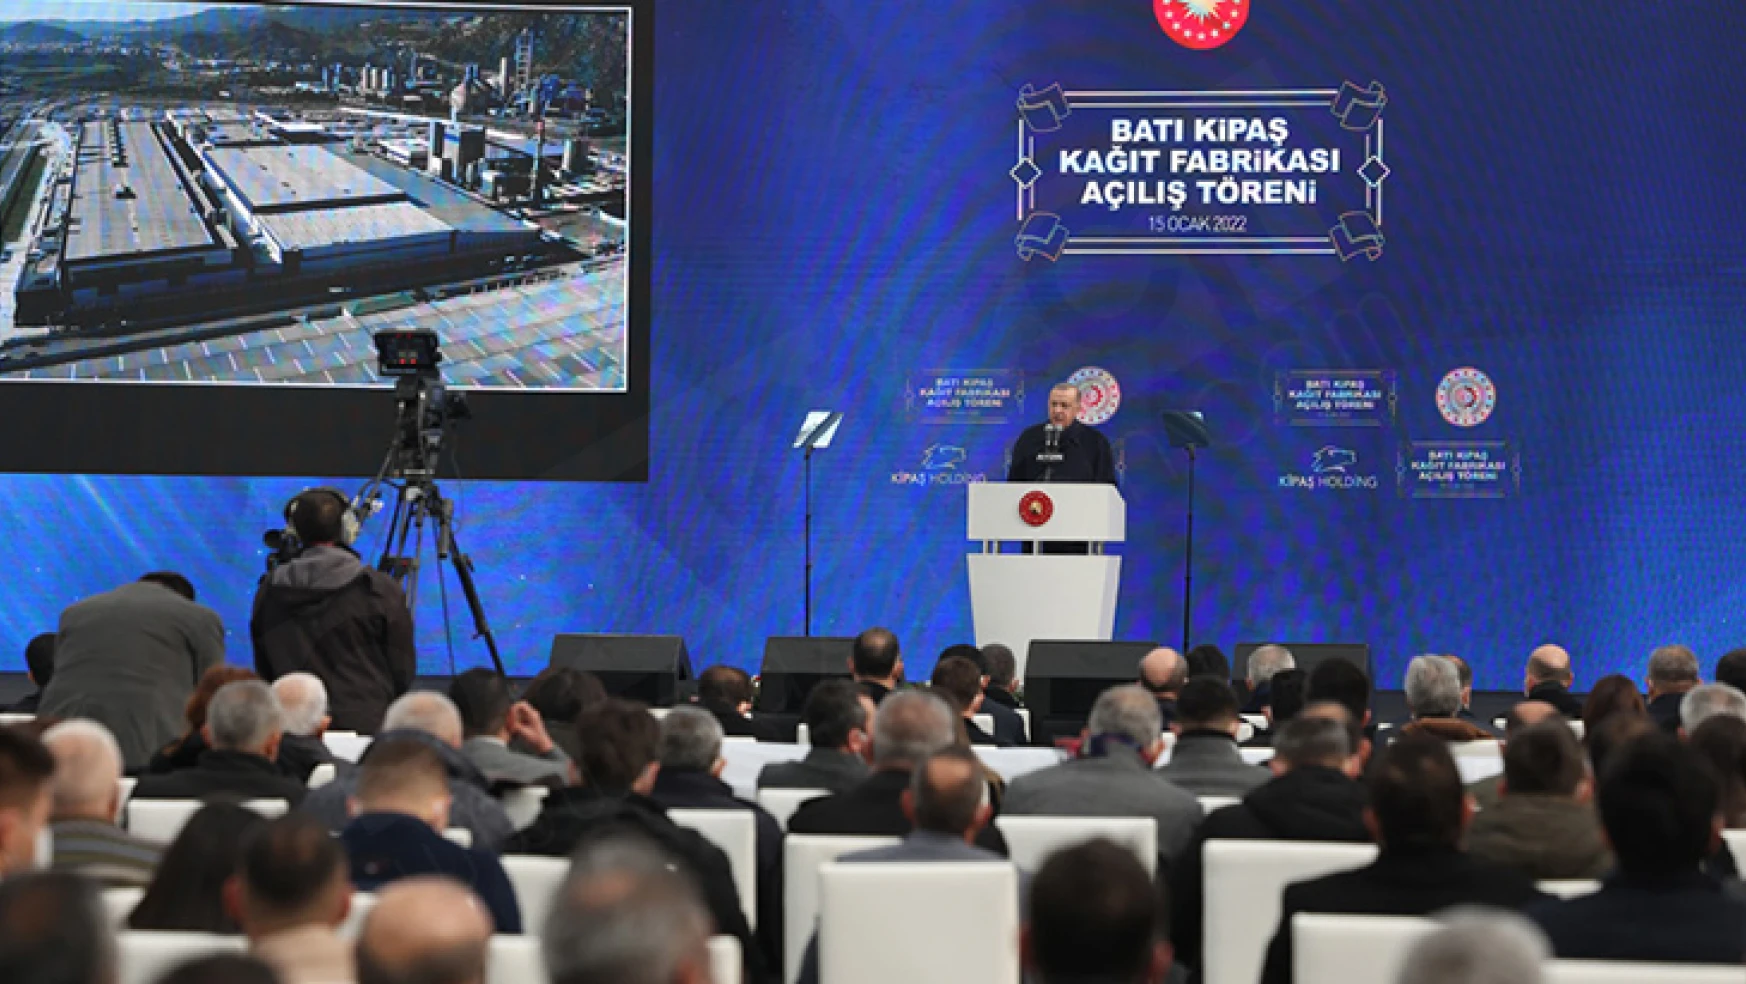 Avrupa'nın en büyük kağıt fabrikasını Cumhurbaşkanı Erdoğan hizmete açtı